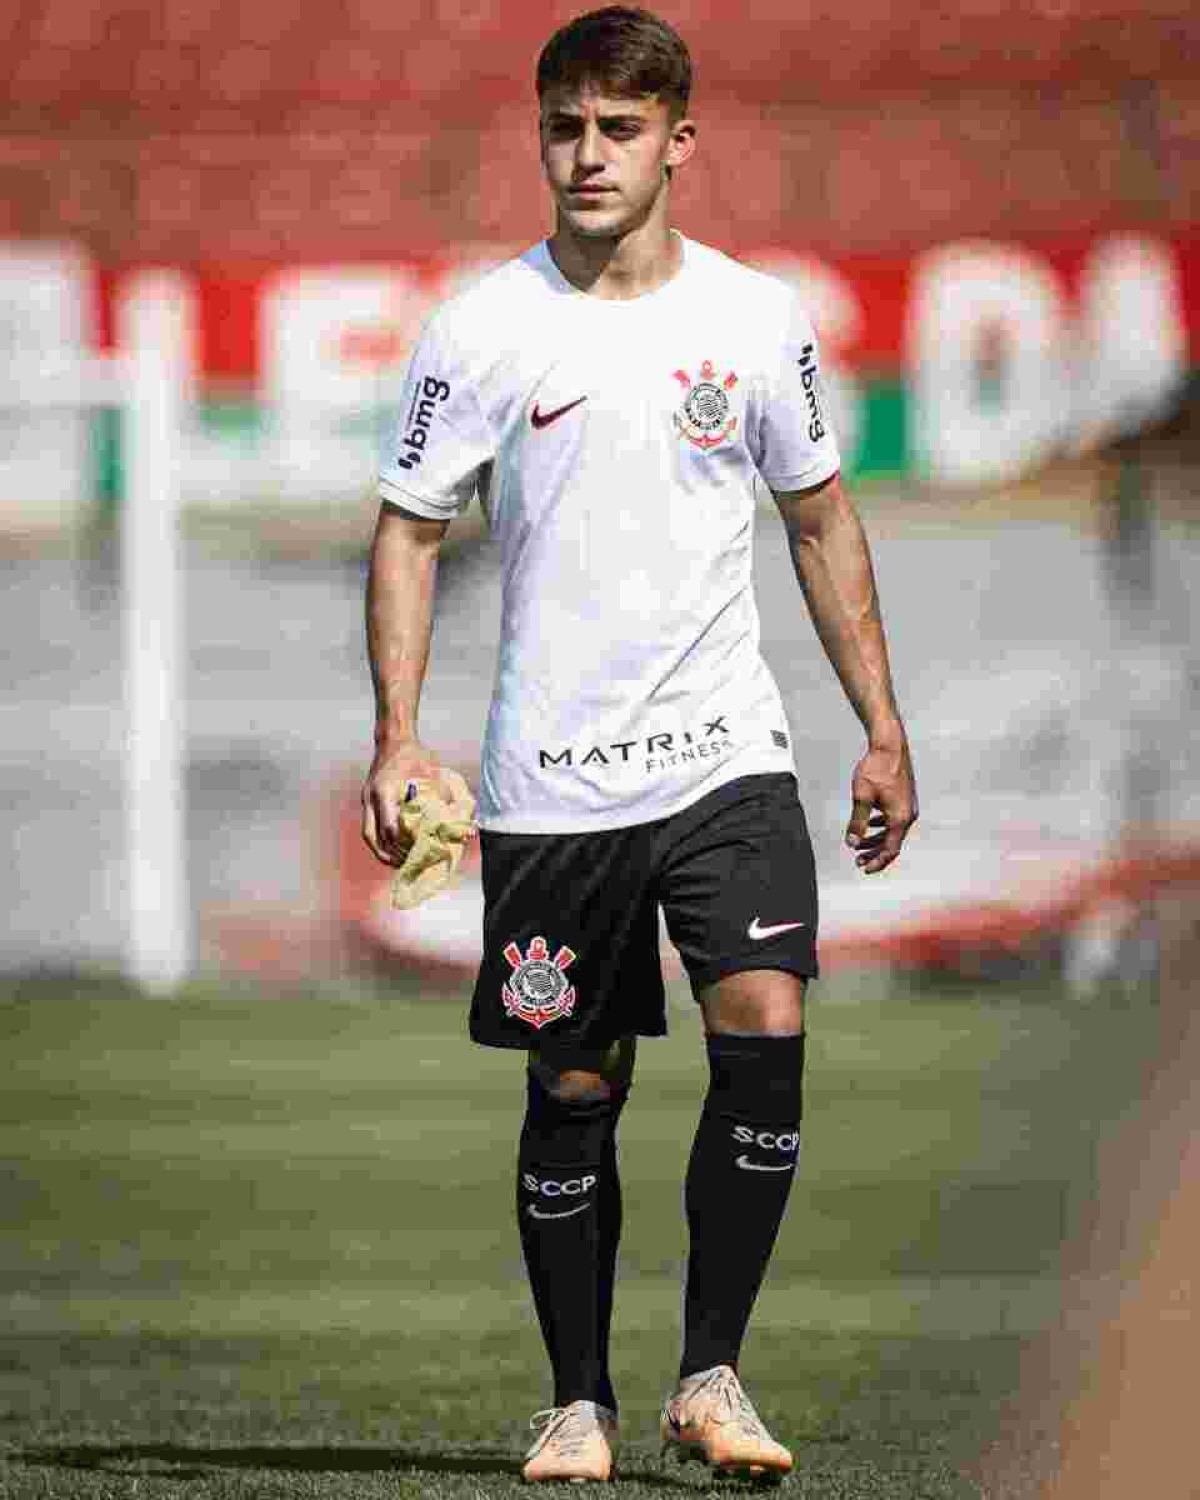  Guilherme Zimovski, jogador nascido em Brasília que se mudou para jogar no futebol polonês